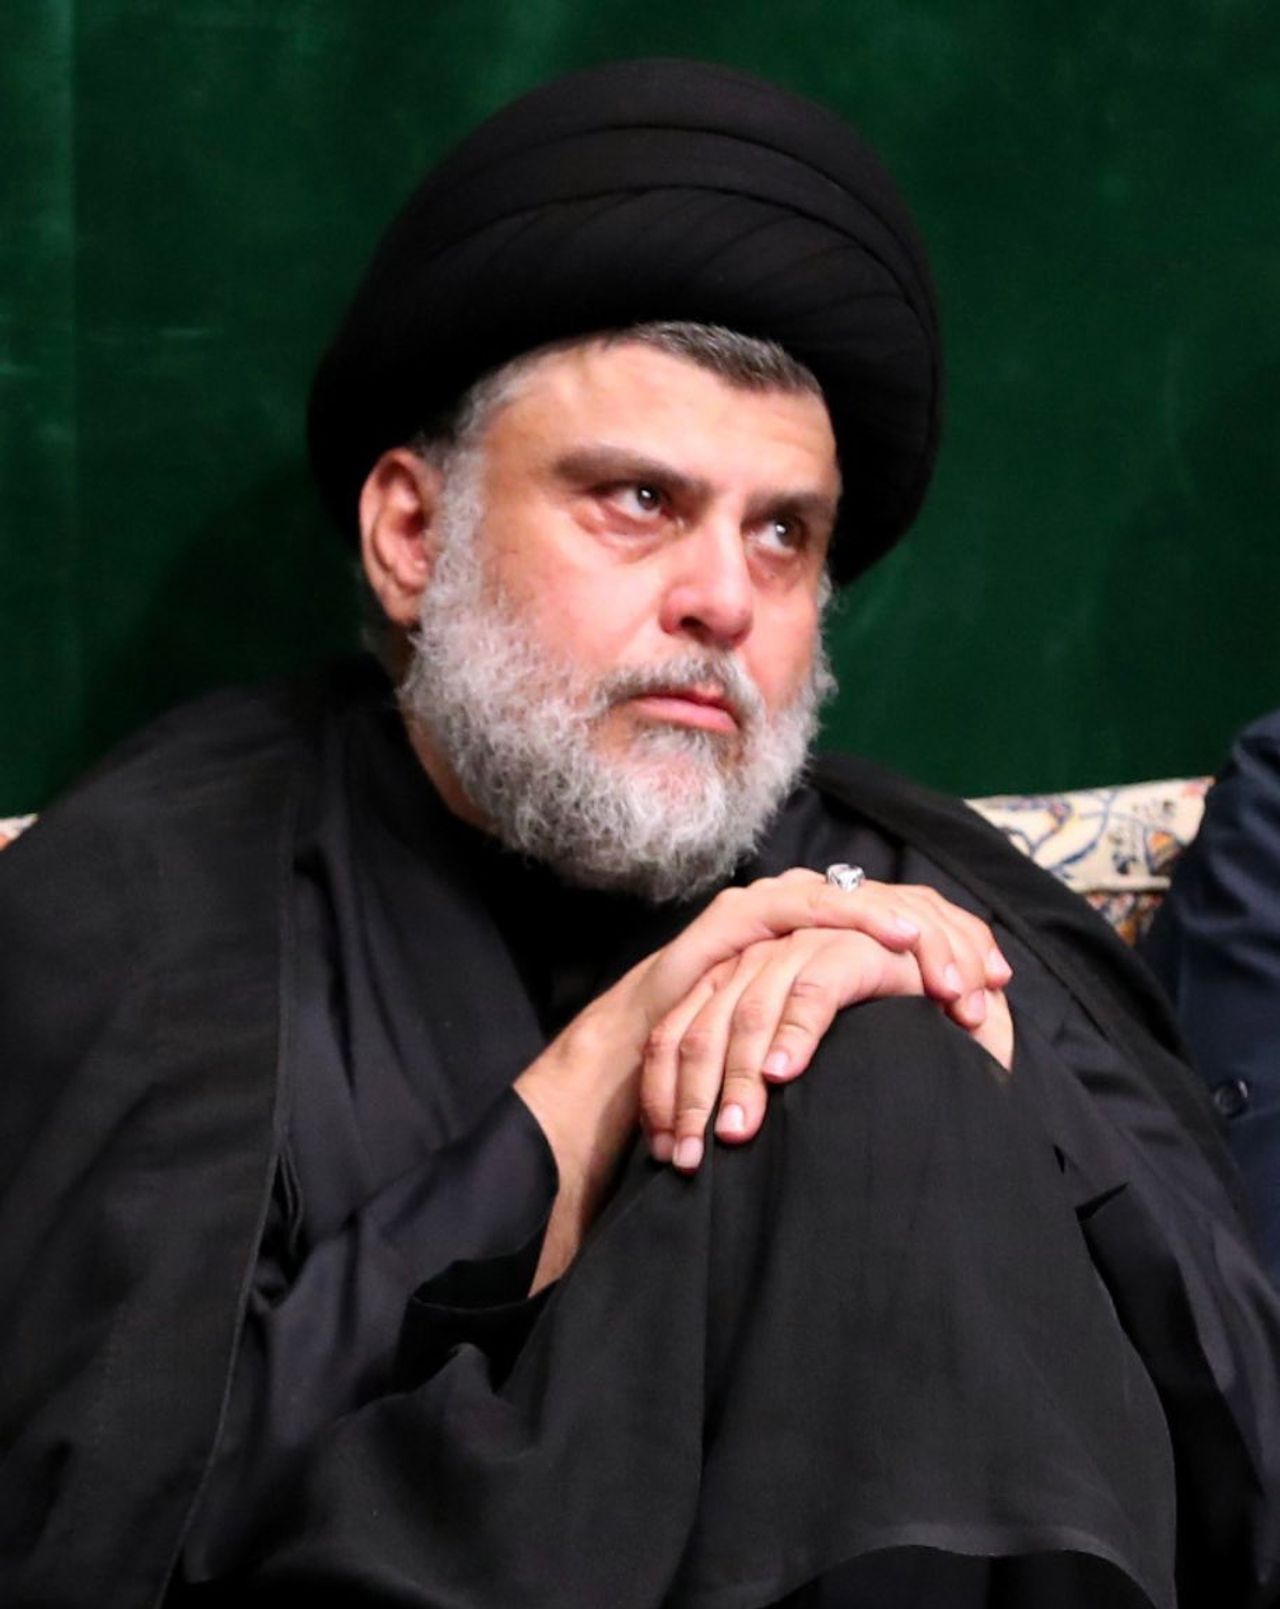 Iraqi Shia cleric Muqtada al-Sadr